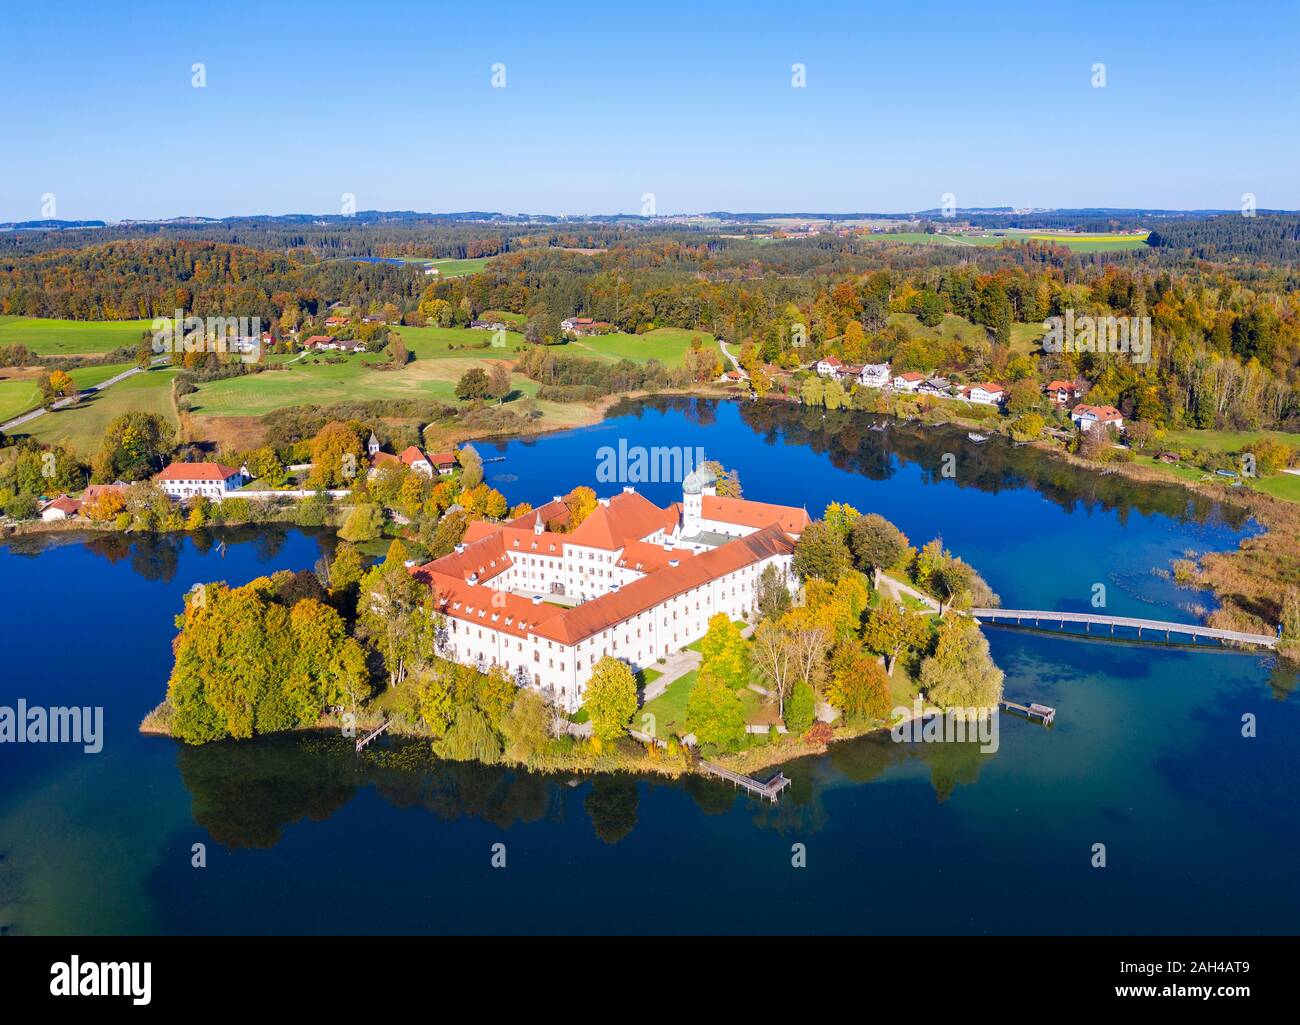 In Germania, in Baviera, Seeon-Seebruck, vista aerea del lago Klostersee e Abbazia di Seeon Foto Stock